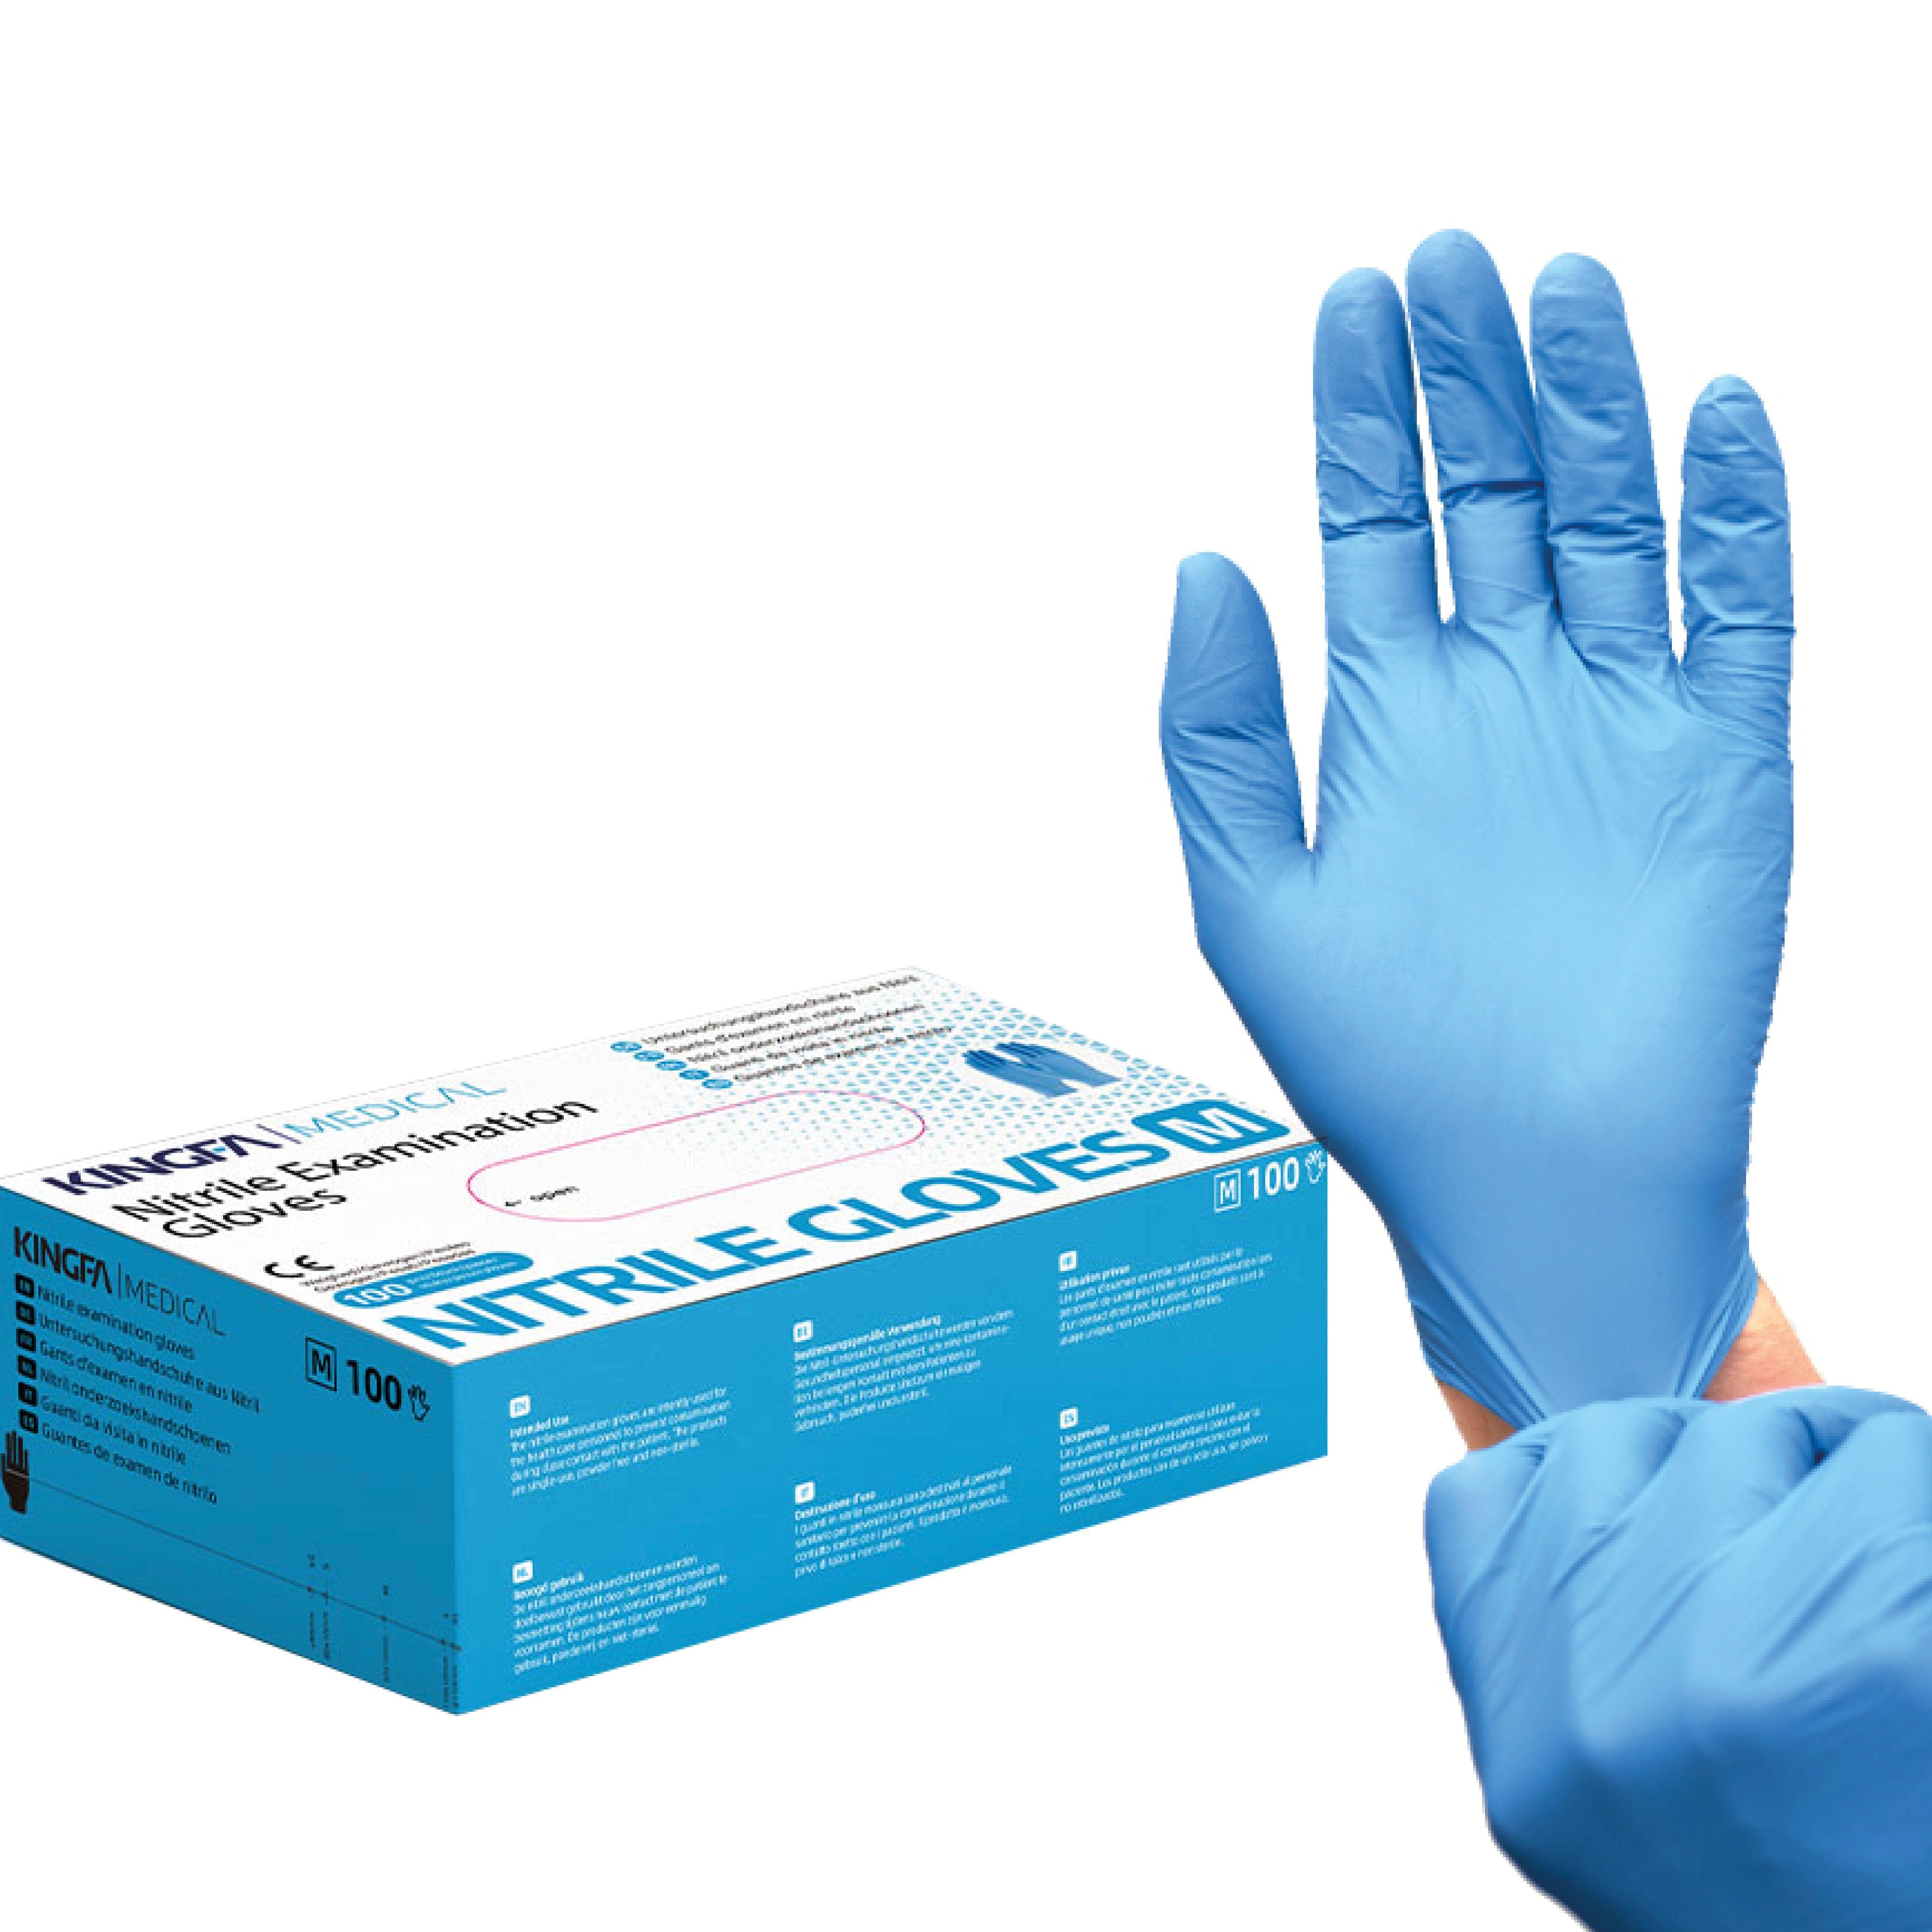 Kingfa Nitril-Handschuhe Zum Schutz (Medizinische Qualitätsware)